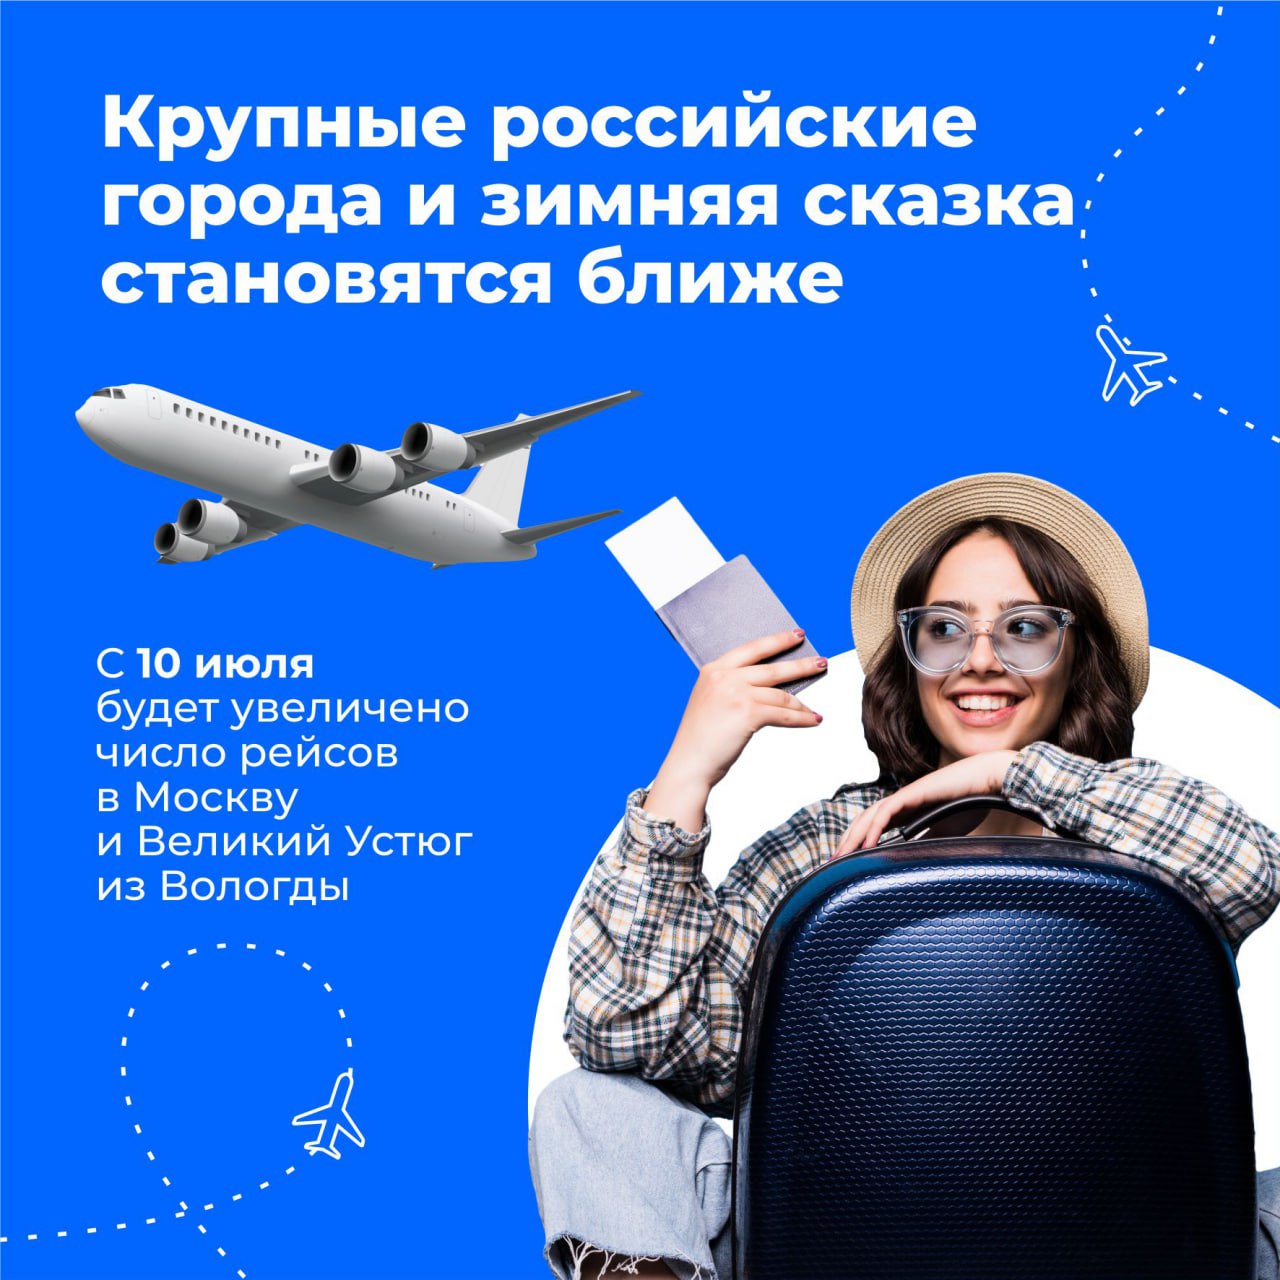 На крыльях в туристическую сказку: дополнительные авиарейсы из Москвы в Вологду и Великий Устюг появятся по понедельникам.